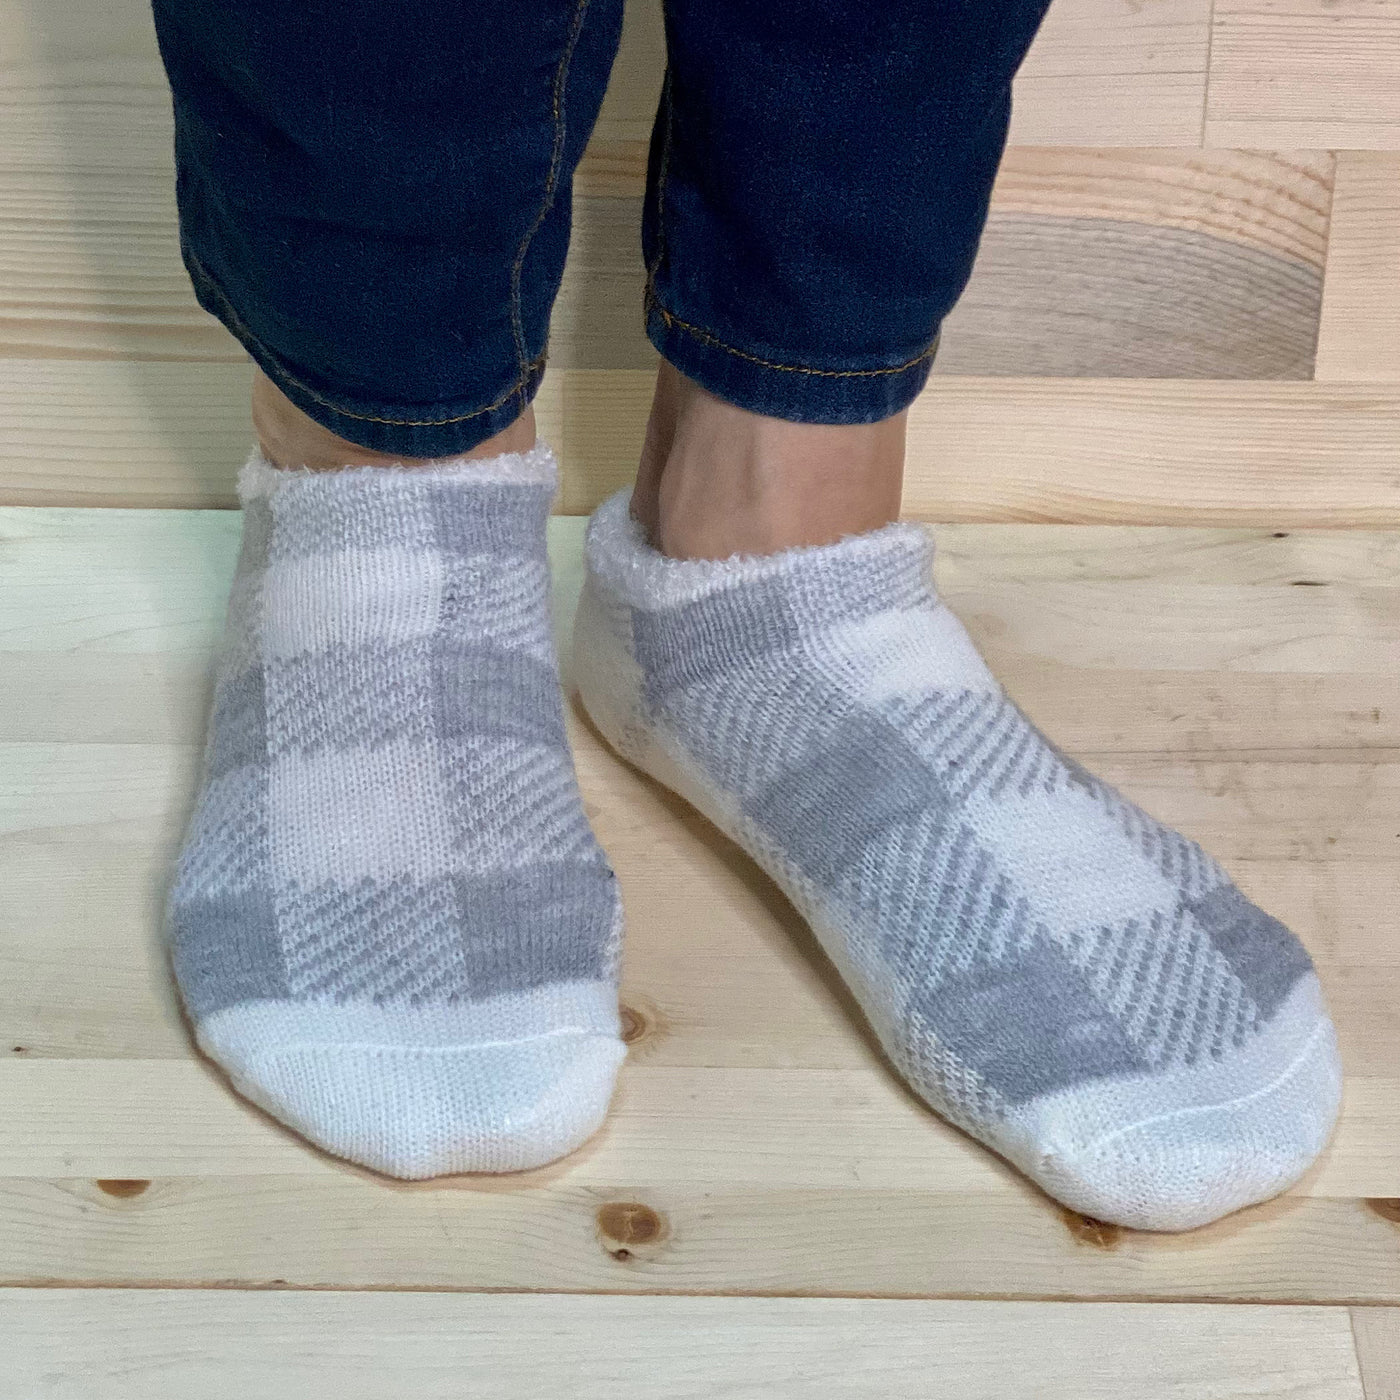 Fleece Plaid Socks